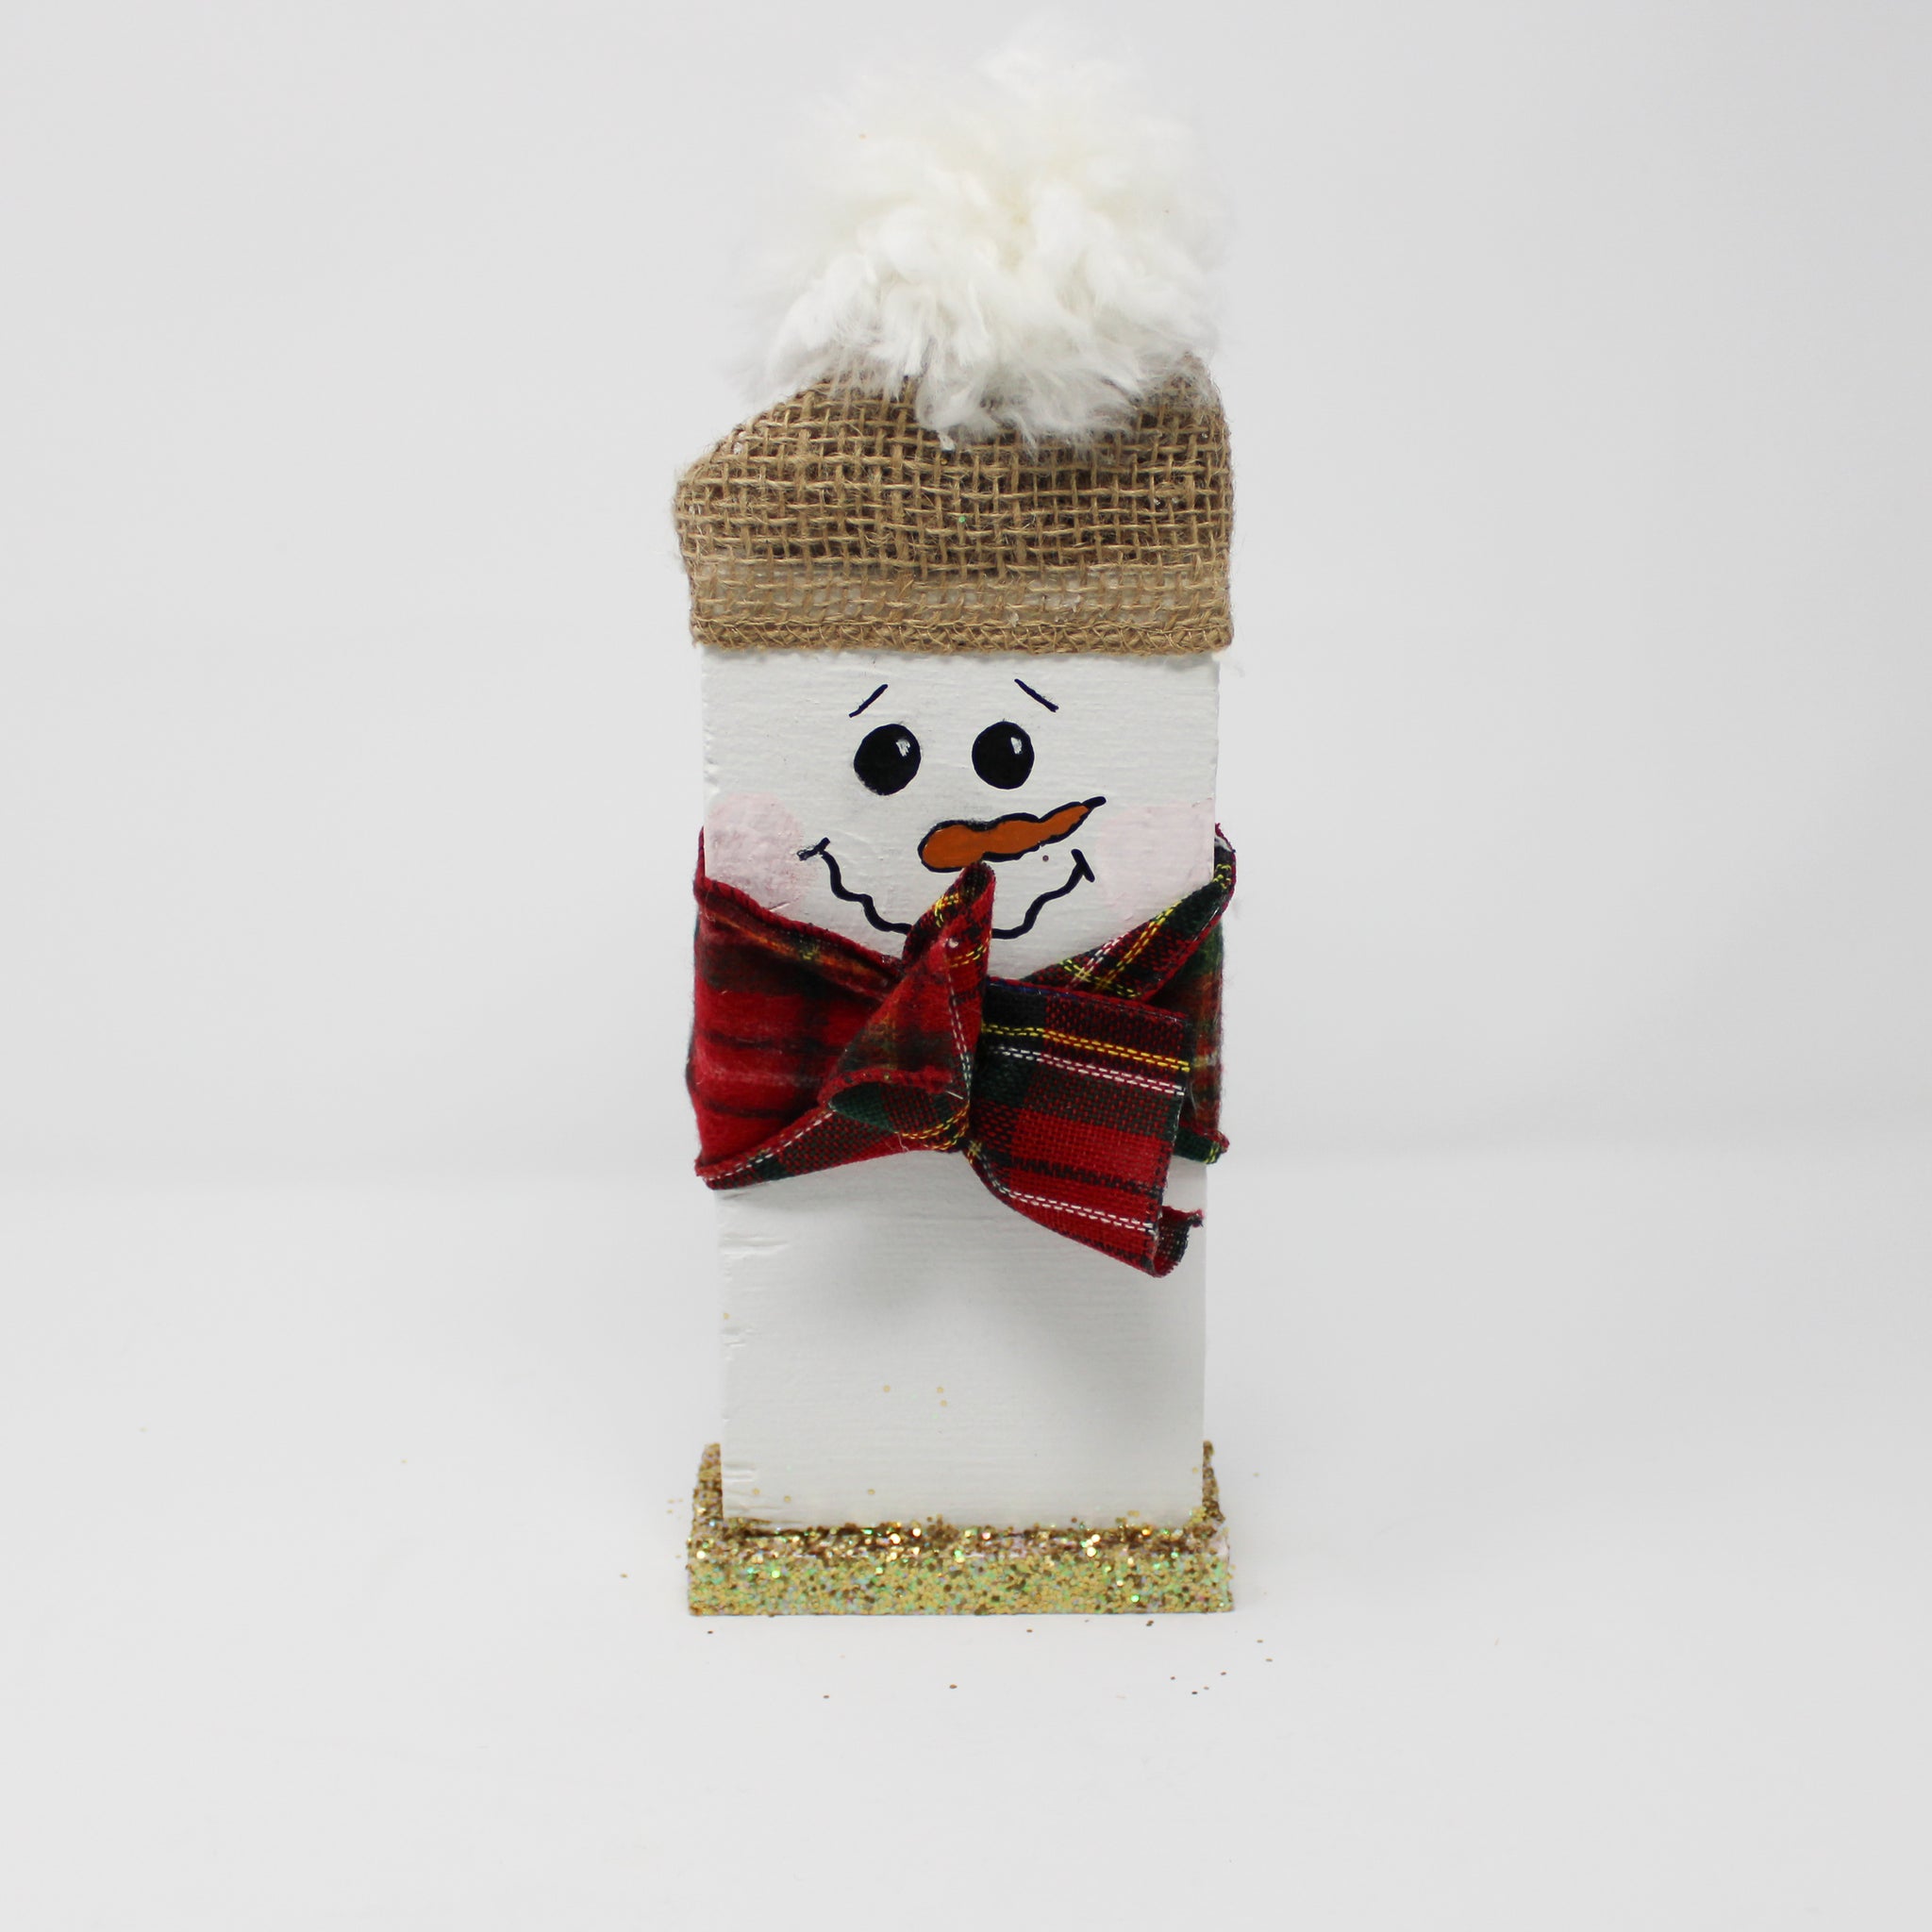 Wooden Snowman